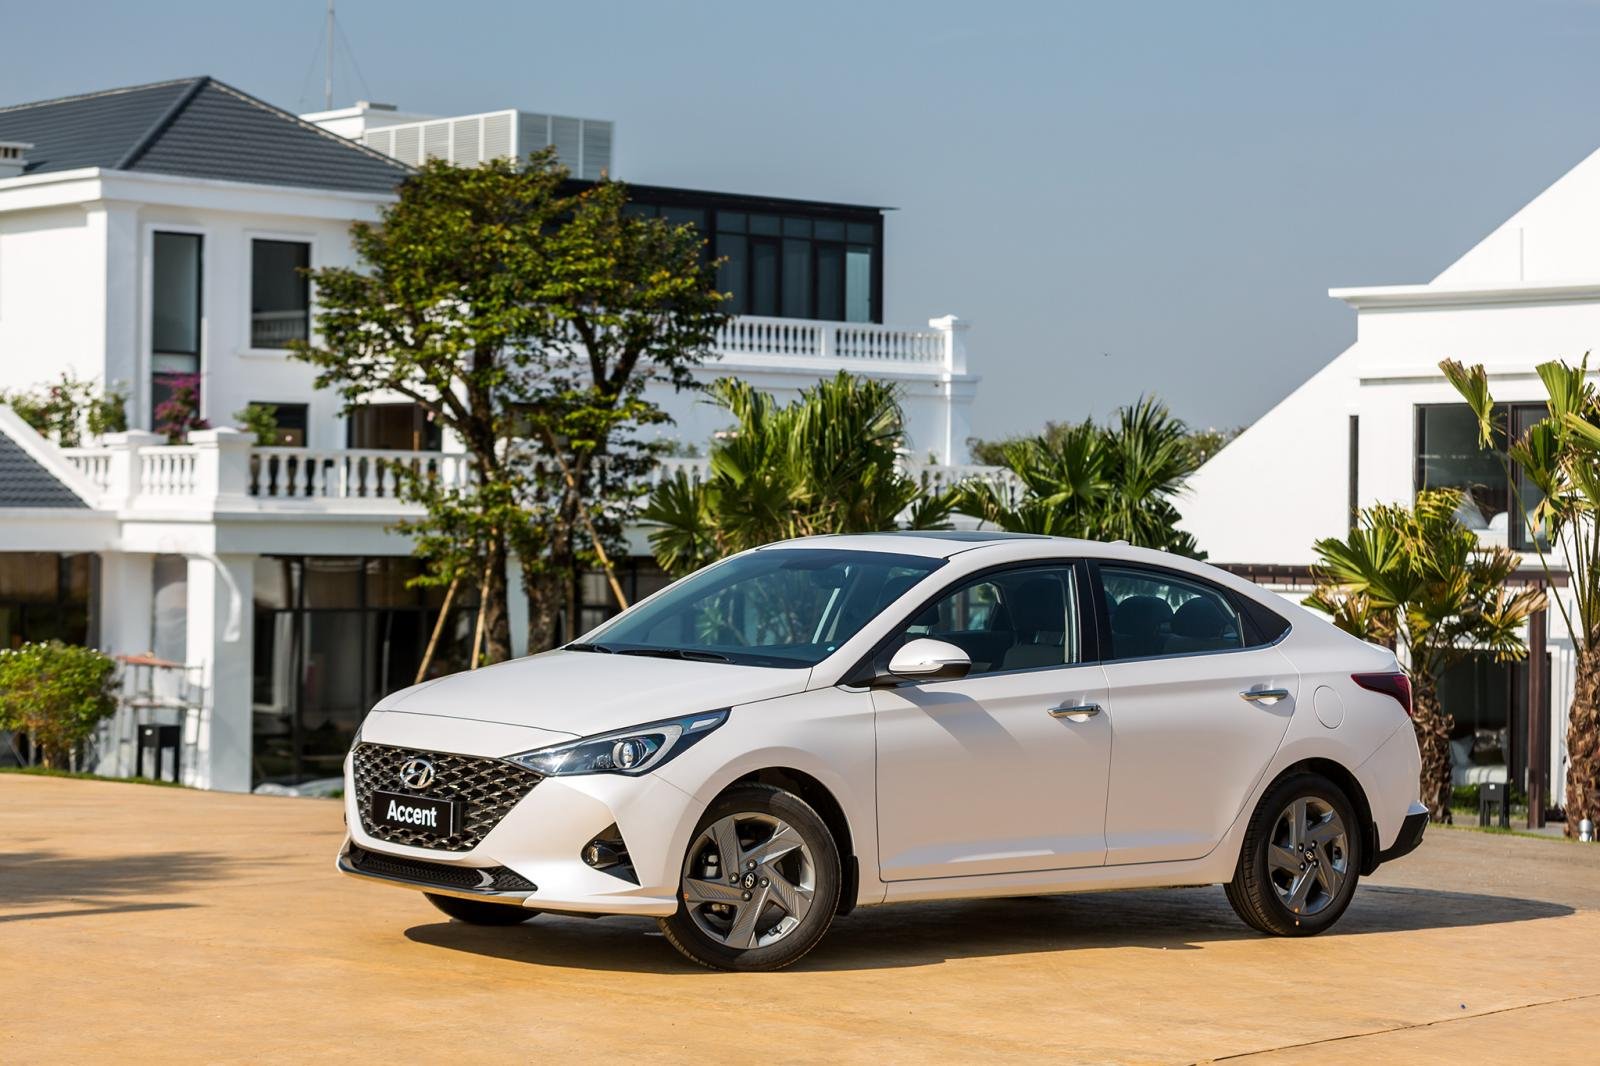 Điều gì giúp bộ đôi Hyundai Accent và Creta chiếm đỉnh bảng doanh số?- Ảnh 1.